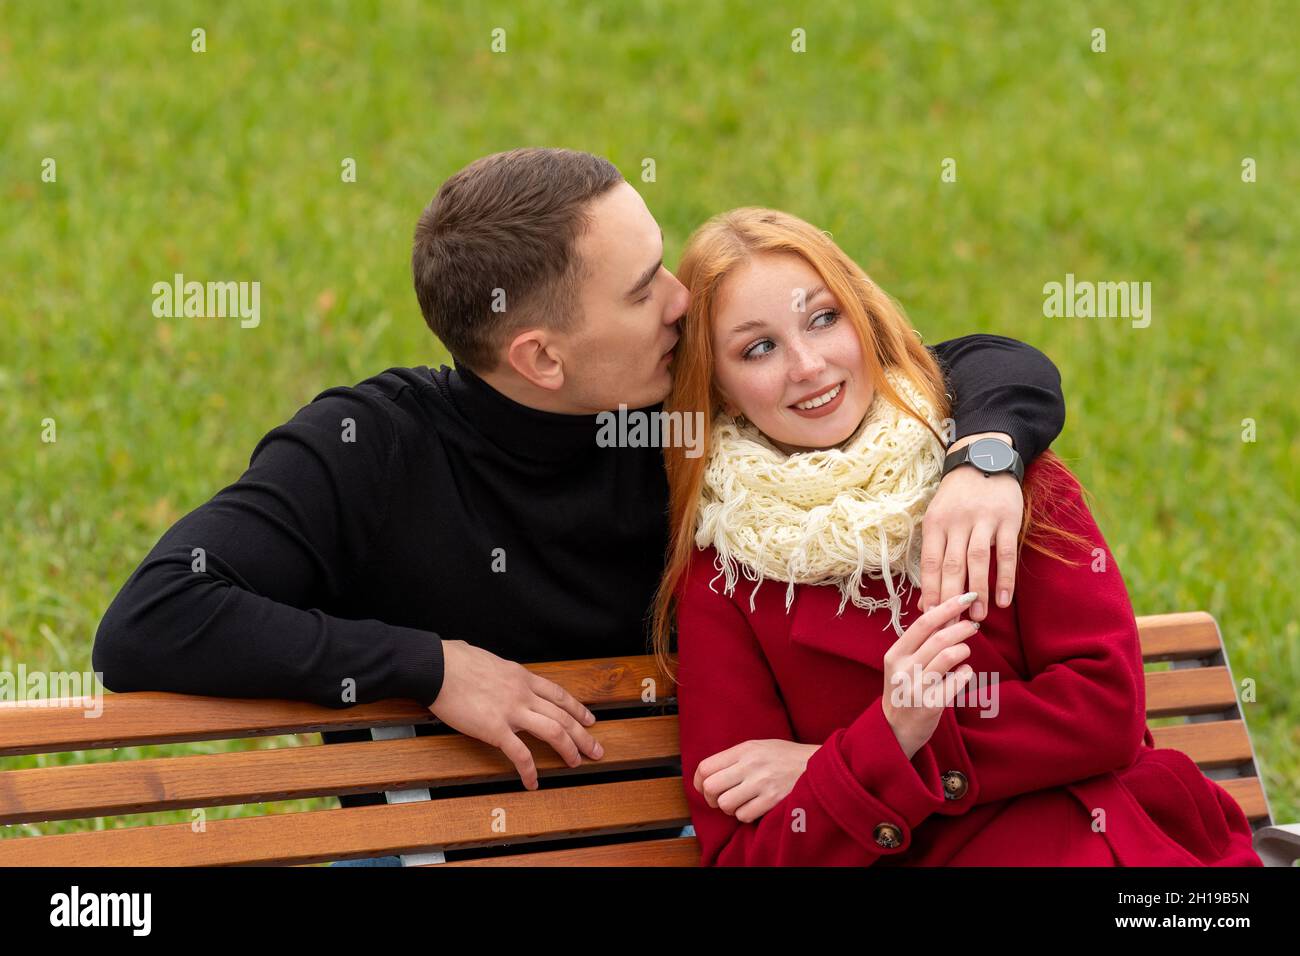 jeune couple romantique sur un banc de parc, le gars chuchote dans l'oreille de la fille Banque D'Images